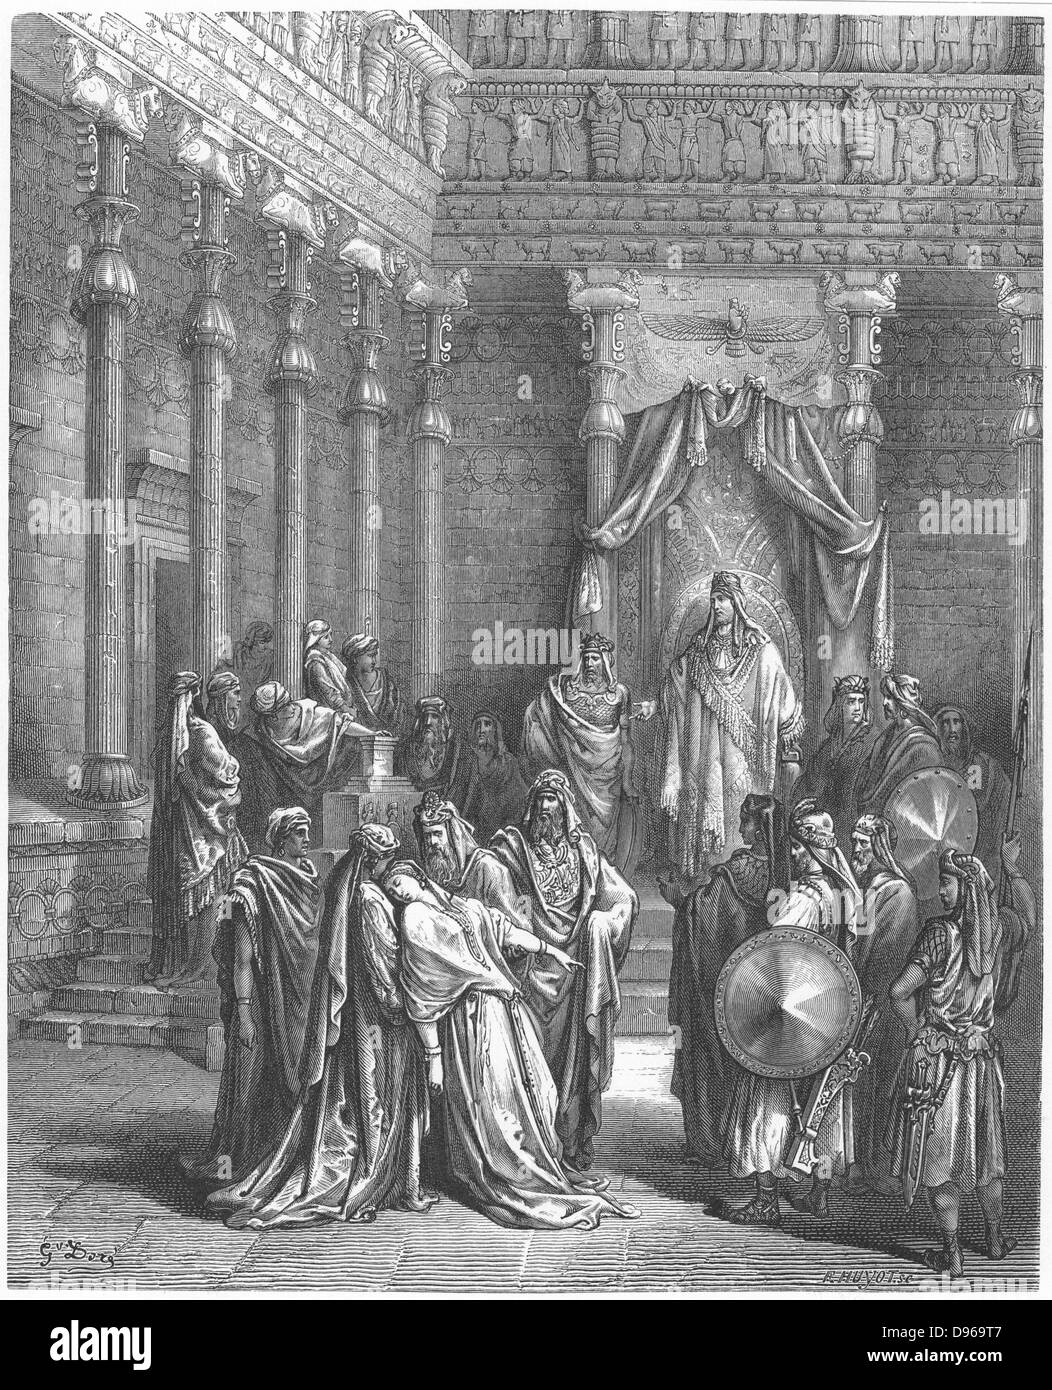 Esther, entrée en présence du roi Ashauerus s'attendent à mourir parce qu'elle était un Juif, s'évanouissant dans la peur. De Gustave Dore's "Bible", 1856. Banque D'Images